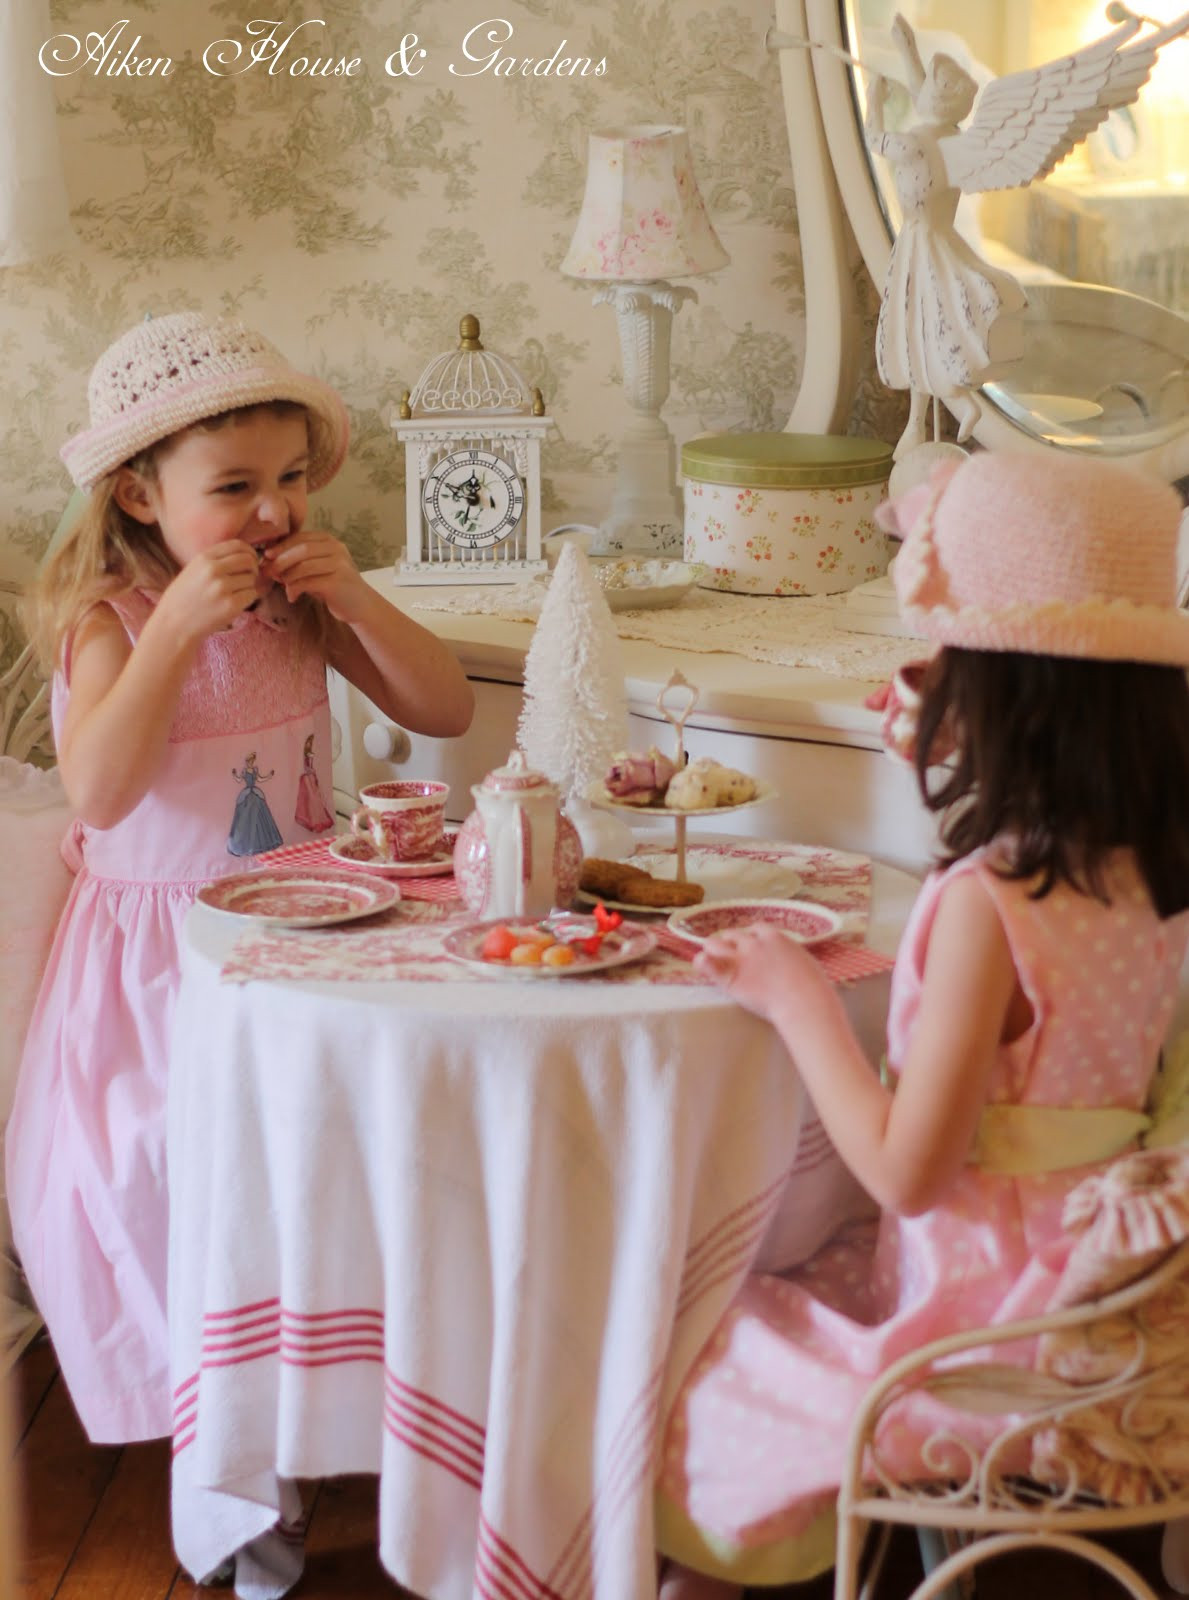 Little Girl Tea Party Ideas
 Aiken House & Gardens Little Girls Tea Party